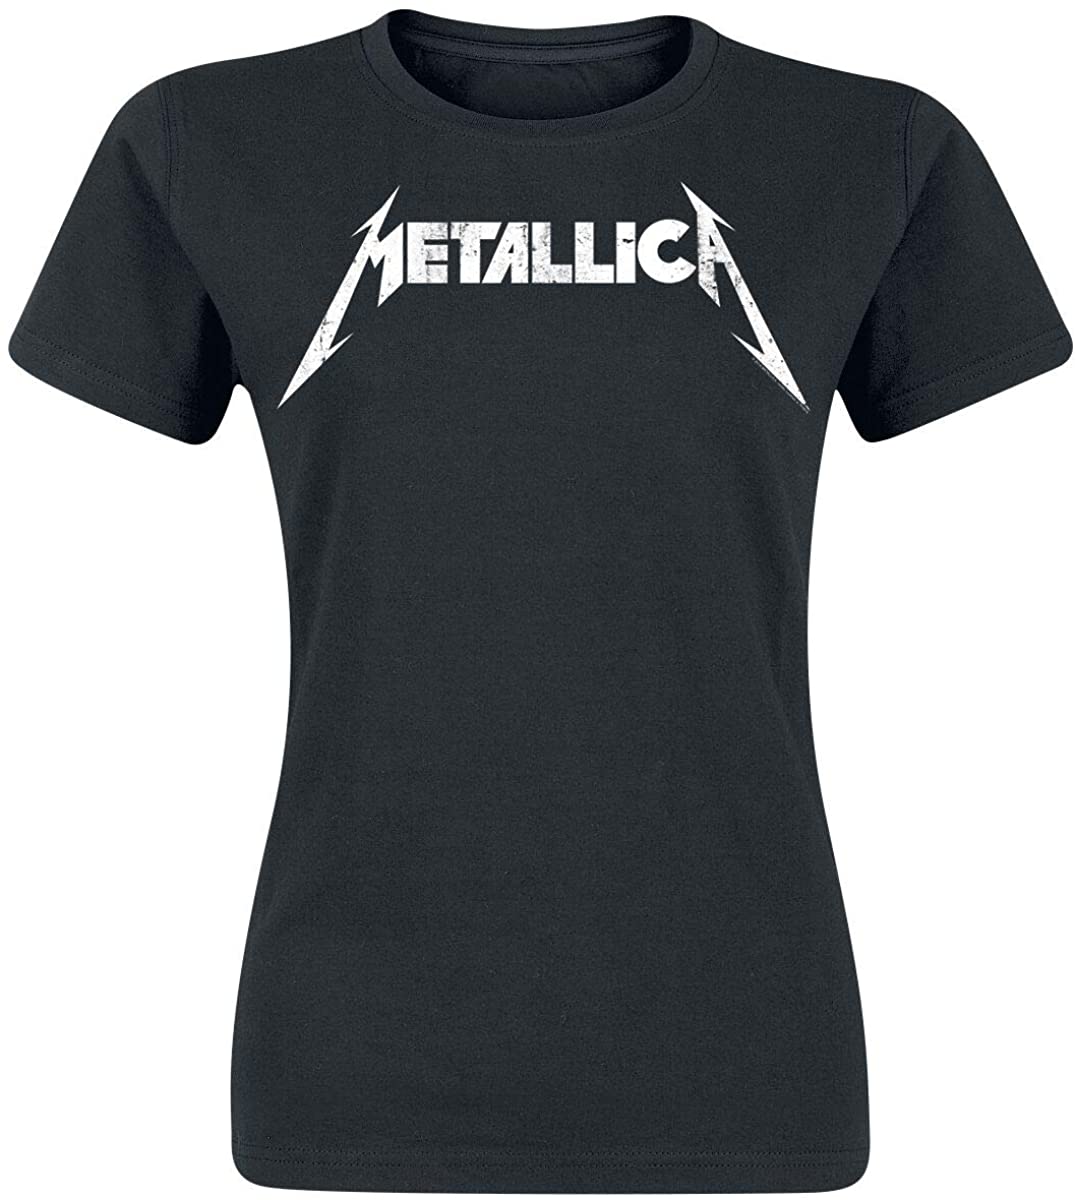 Metallica Textured Logo Frauen T-Shirt Schwarz Band-Merch, Bands ...